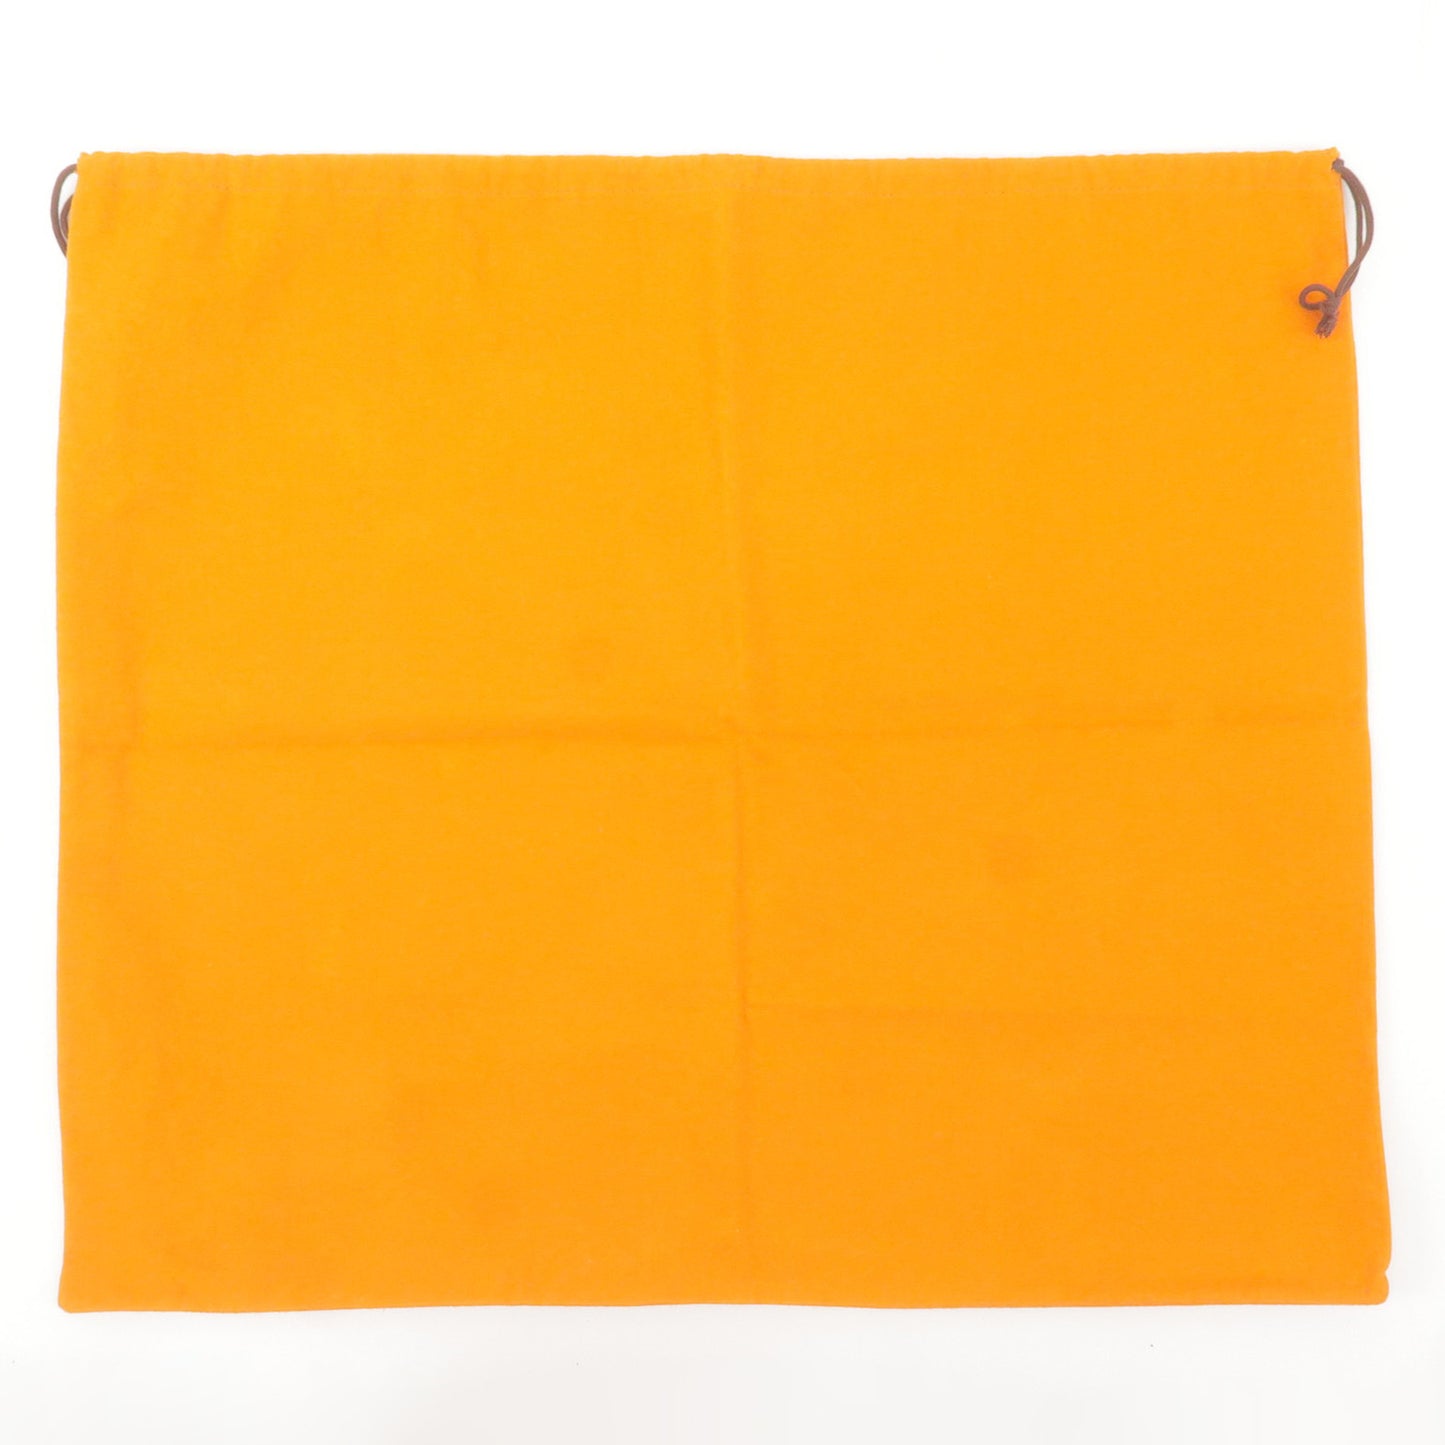 Hermes Set of 5 Dust Bag Storage Bag Cotton Orange